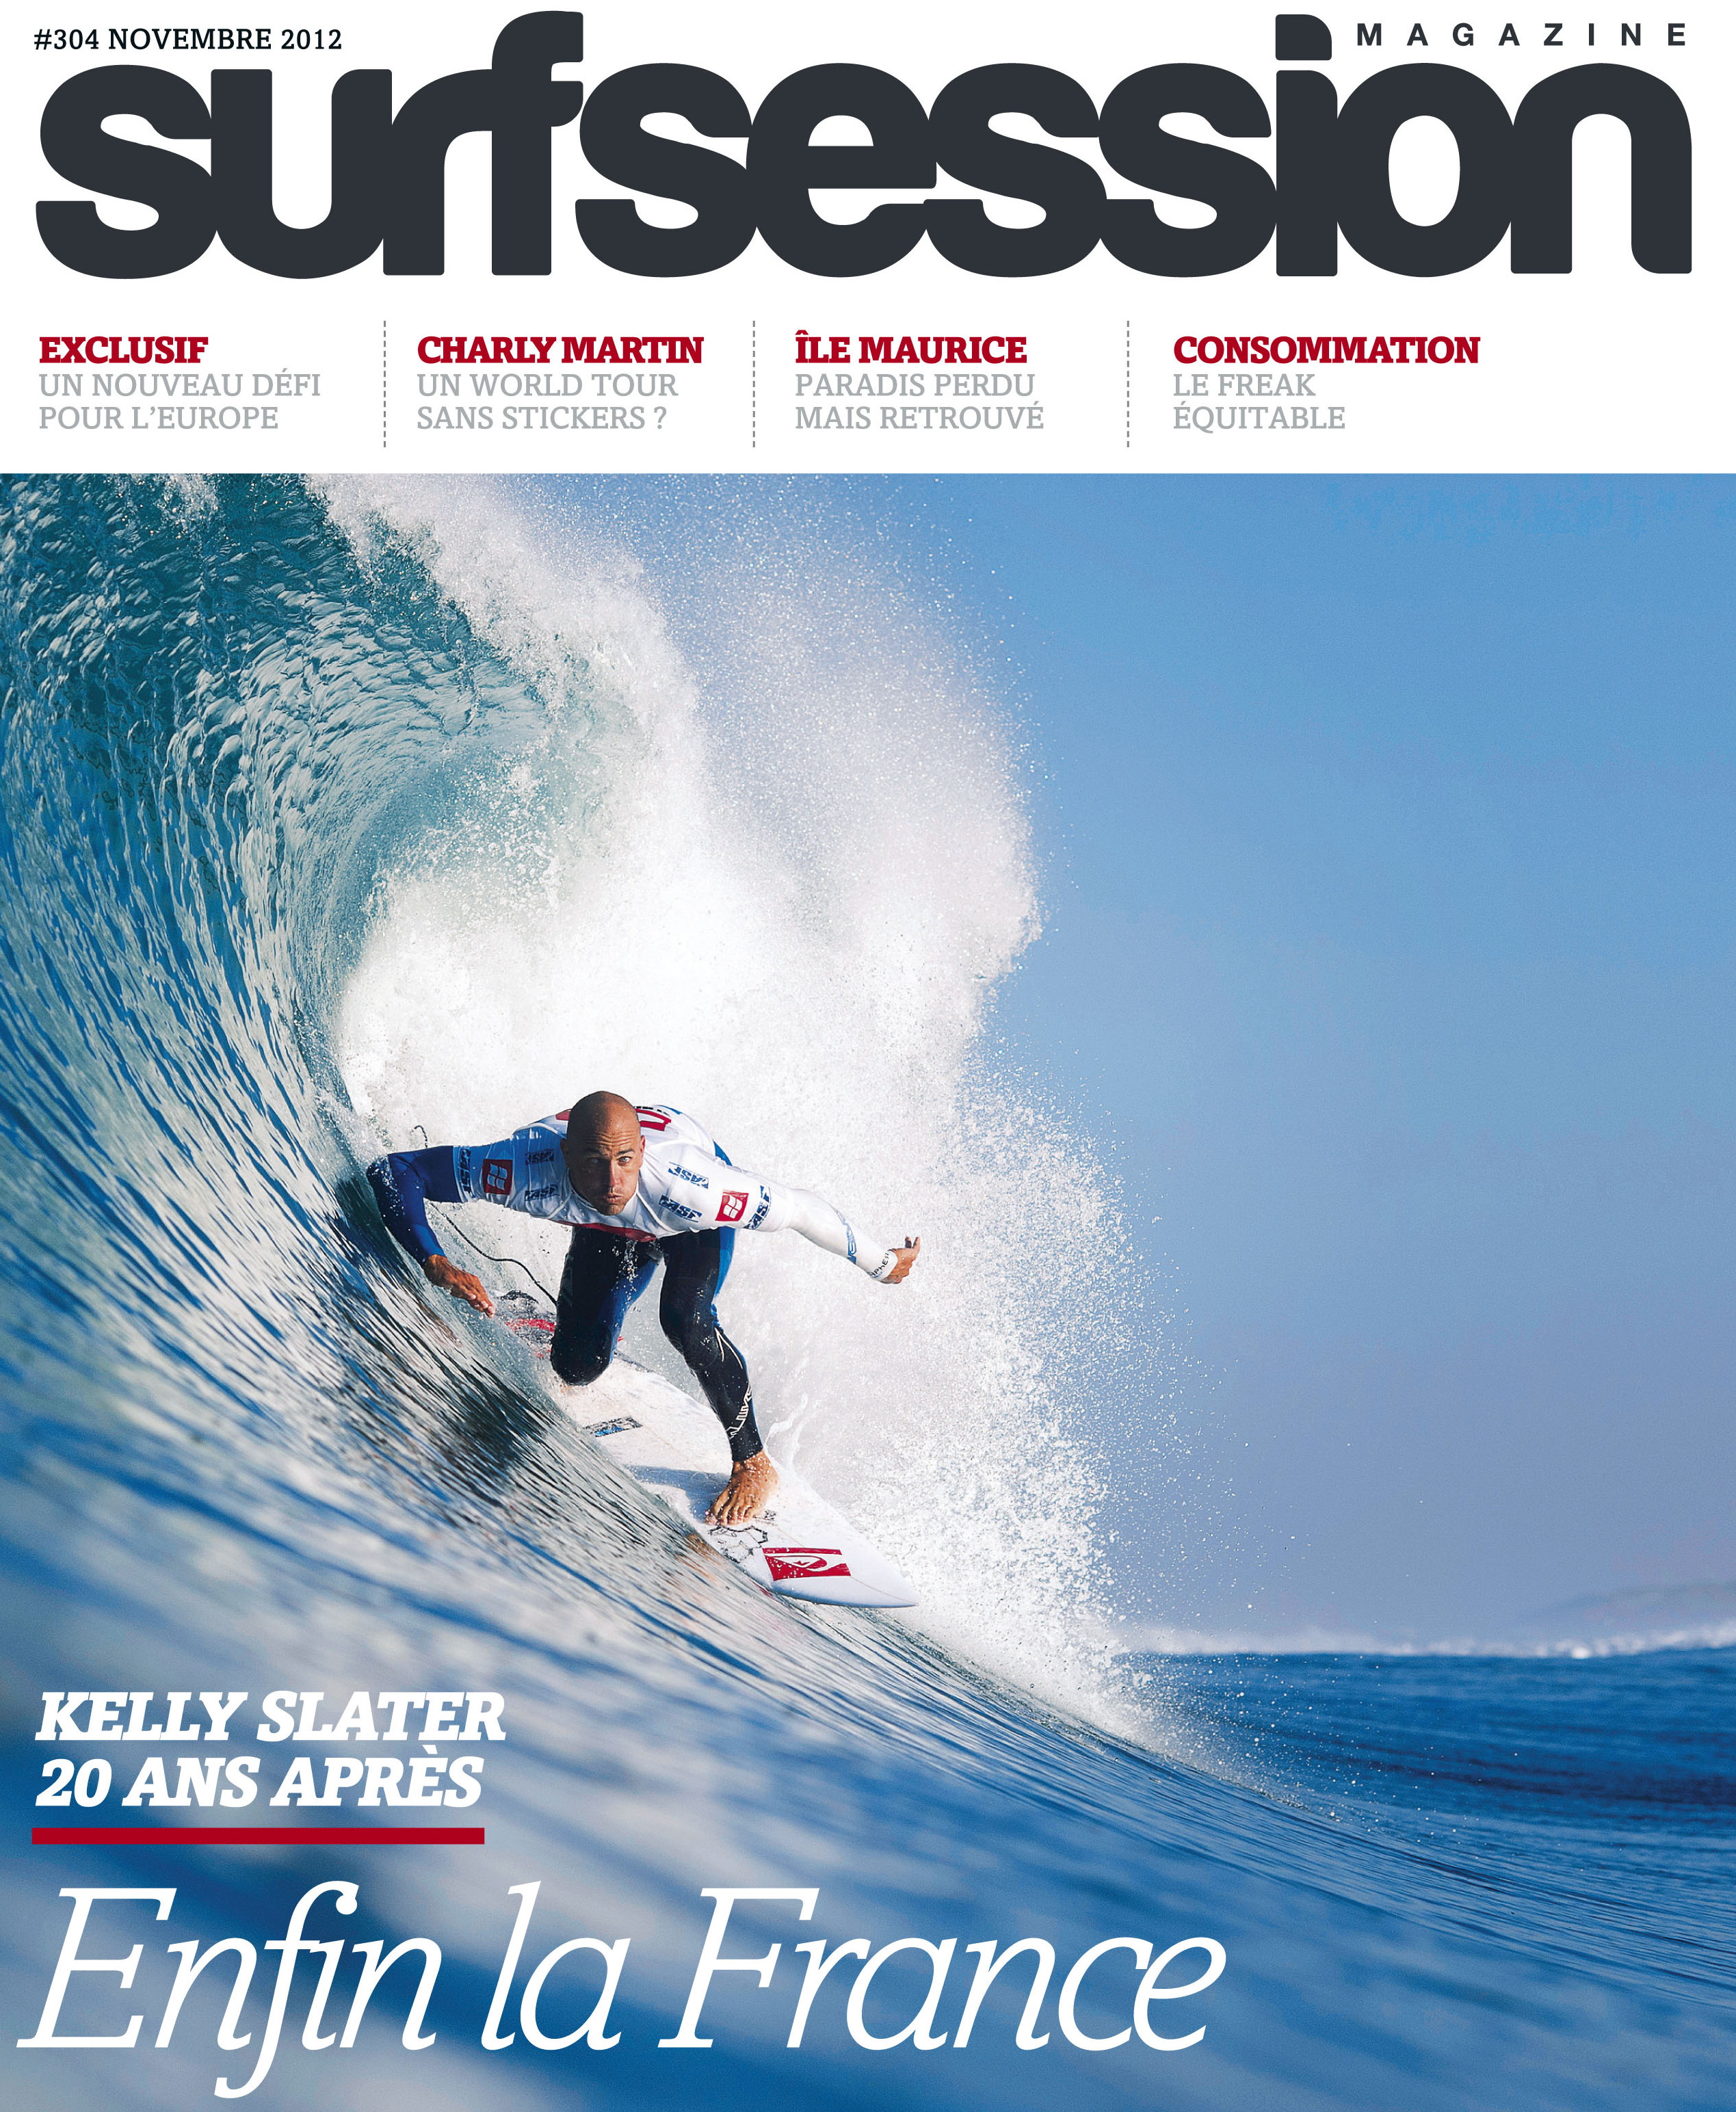 Surf Session 304